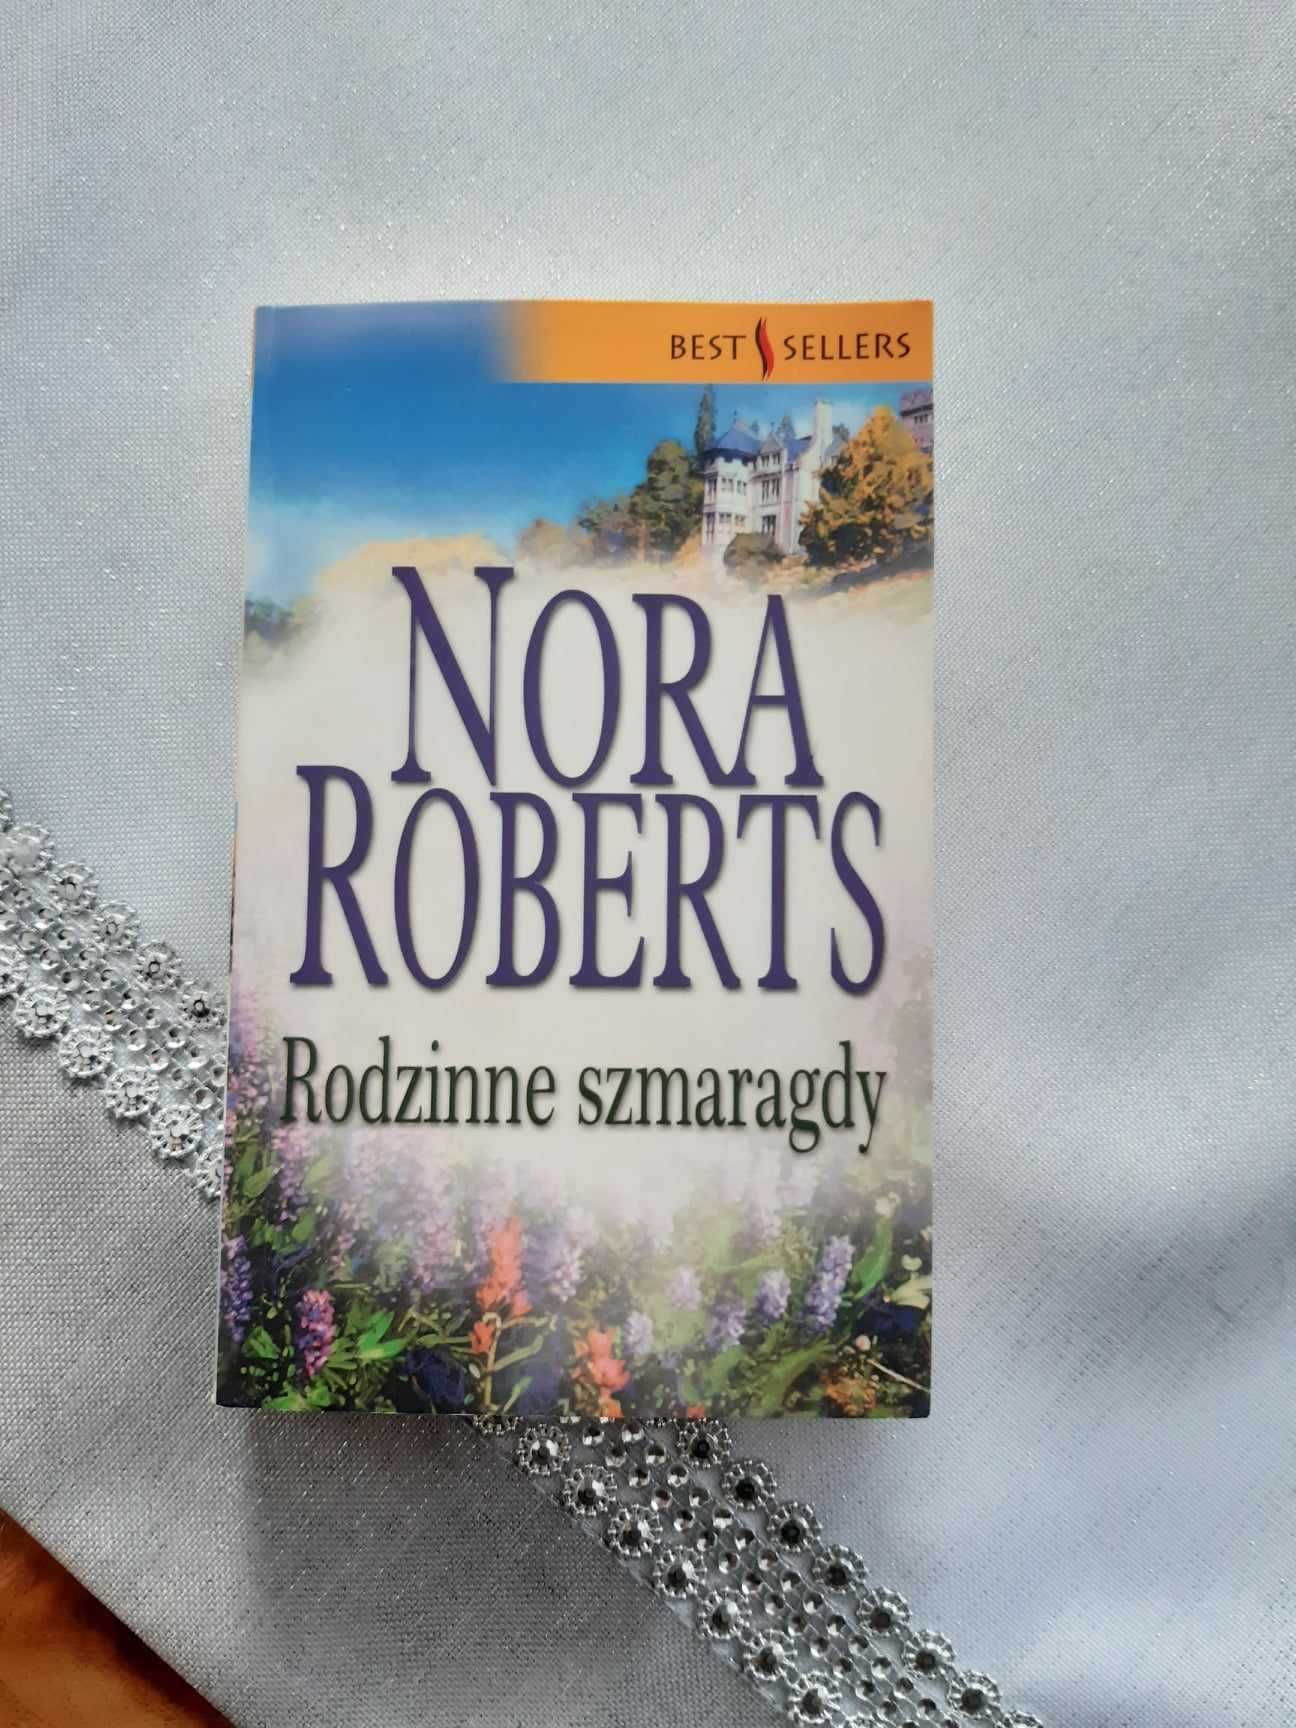 "Rodzinne szmaragdy" Nora Roberts